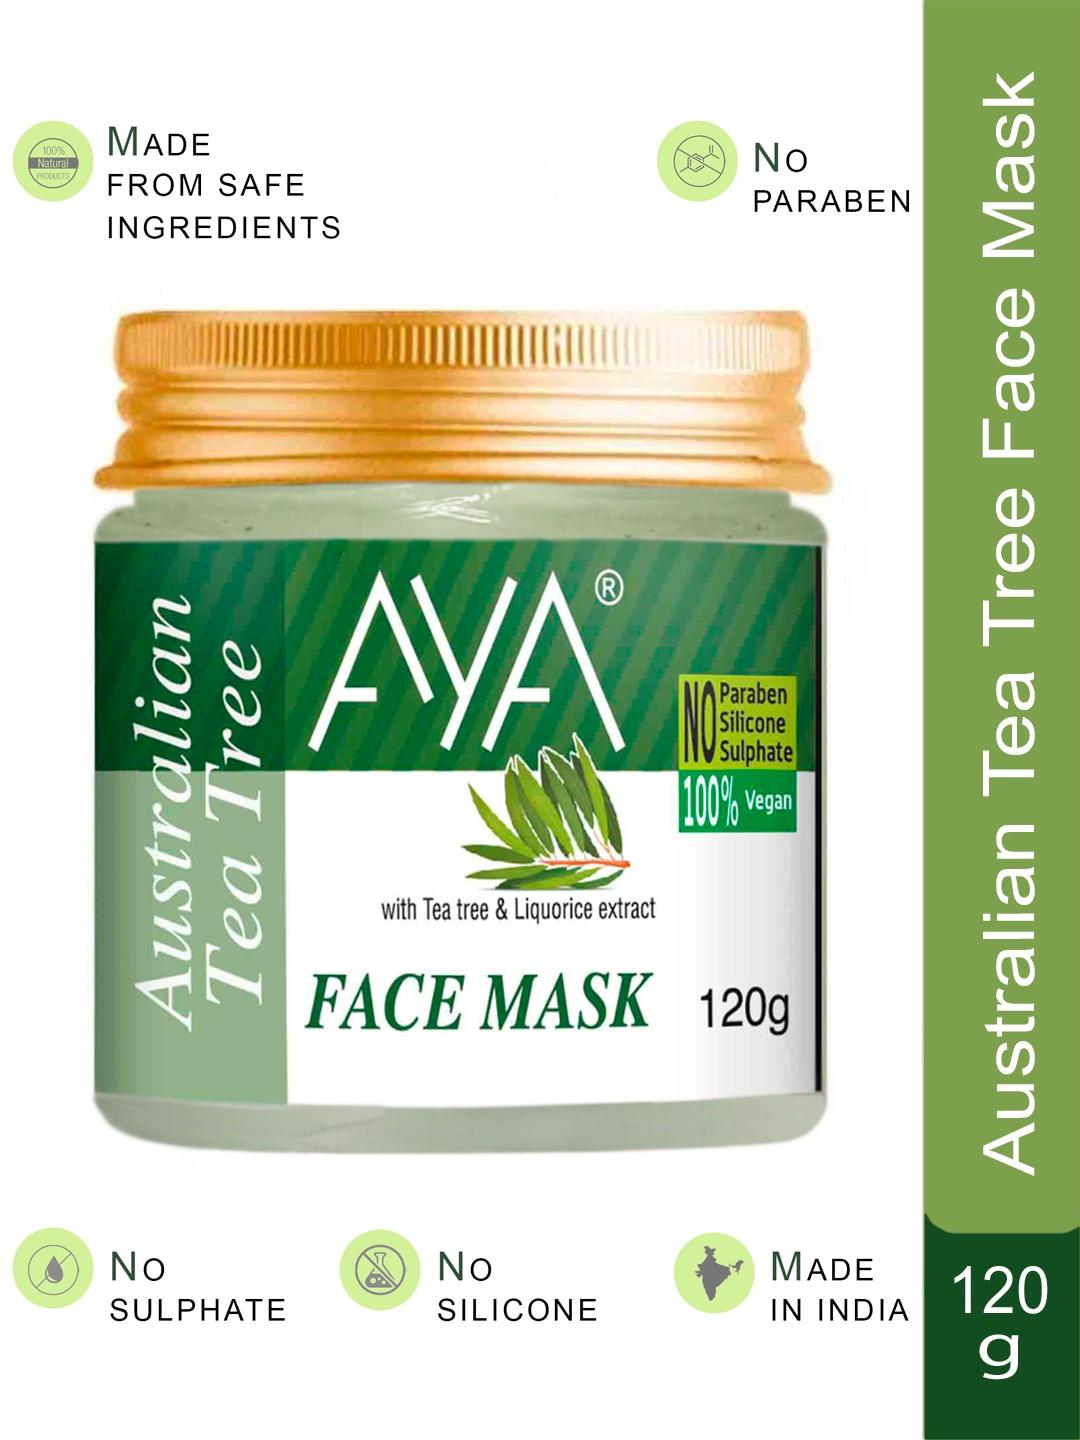 AYA Australian Tea Tree Face Mask With Tea Tree & Liquorice Extract - 120g